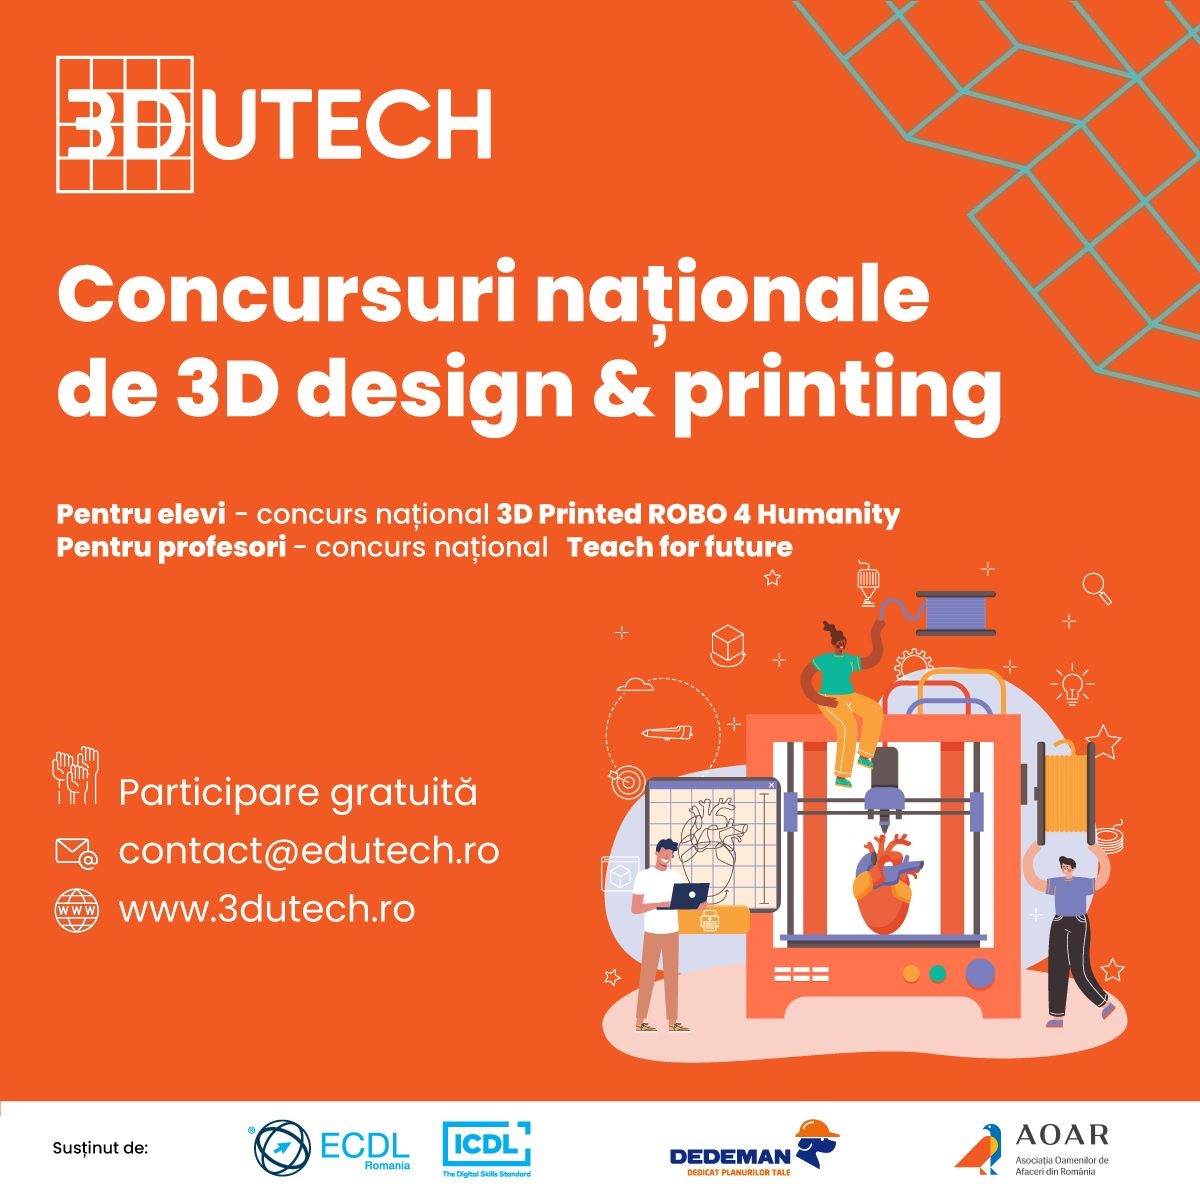 Toți elevii și profesorii pasionați de tehnologie pot participa la Concursurile Naționale 3DUTECH de 3D design & printing. Roboții, principala temă din acest an